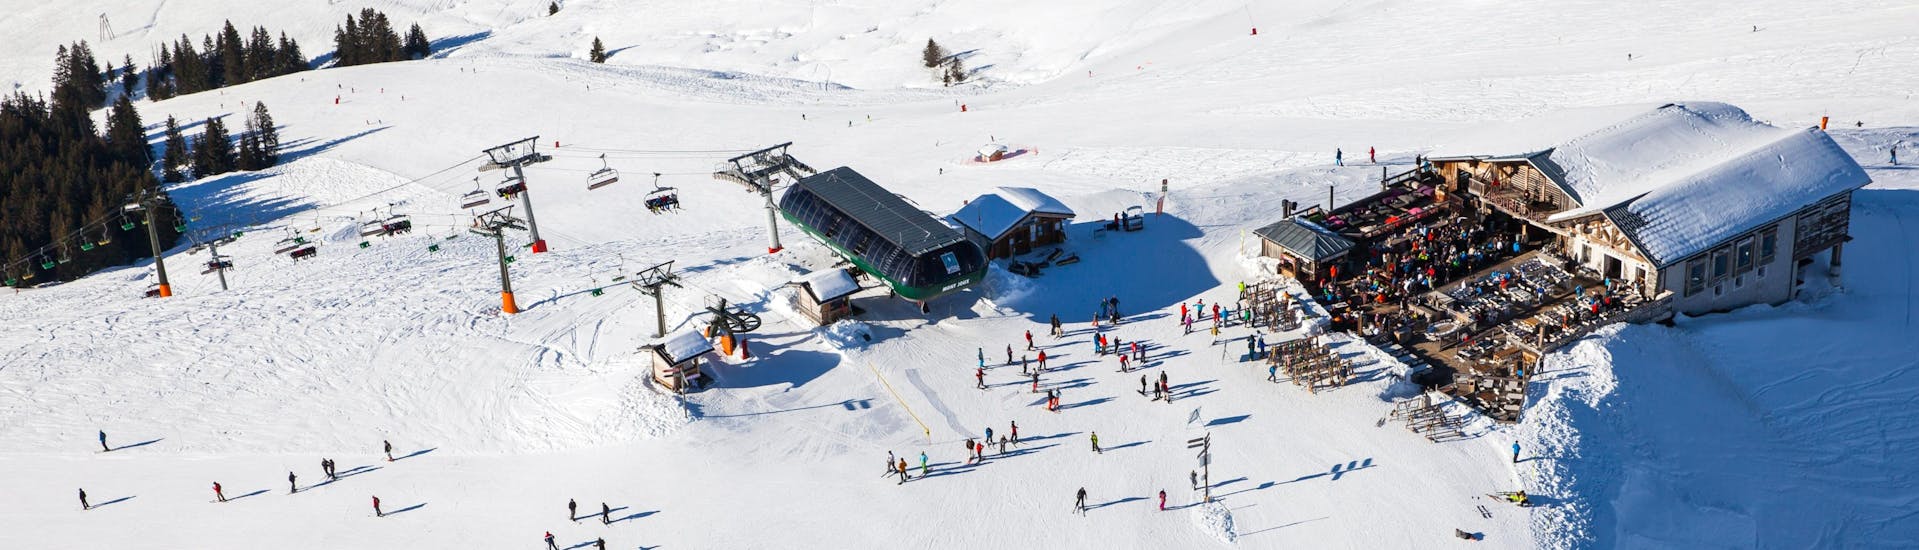 Ausblick auf die sonnige Berglandschaft beim Skifahren lernen mit einer Skischule im Skigebiet Saint Gervais.